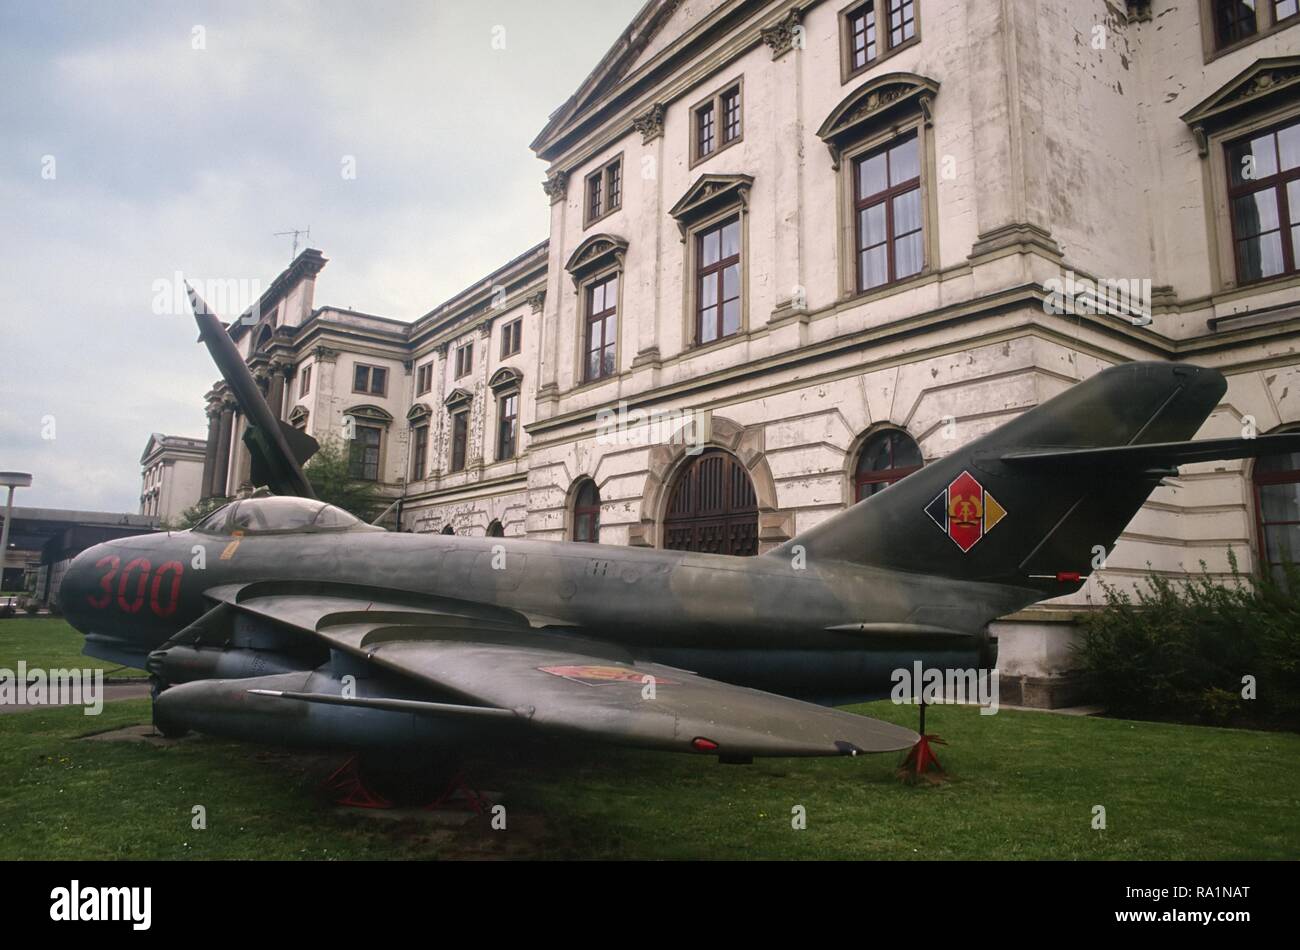 Allemagne, Dresden, musée de l'Armée immédiatement après la réunification entre le DDR et la République fédérale d'Allemagne ; avions de chasse MIG 17 de construction soviétique (mars 1991) Banque D'Images